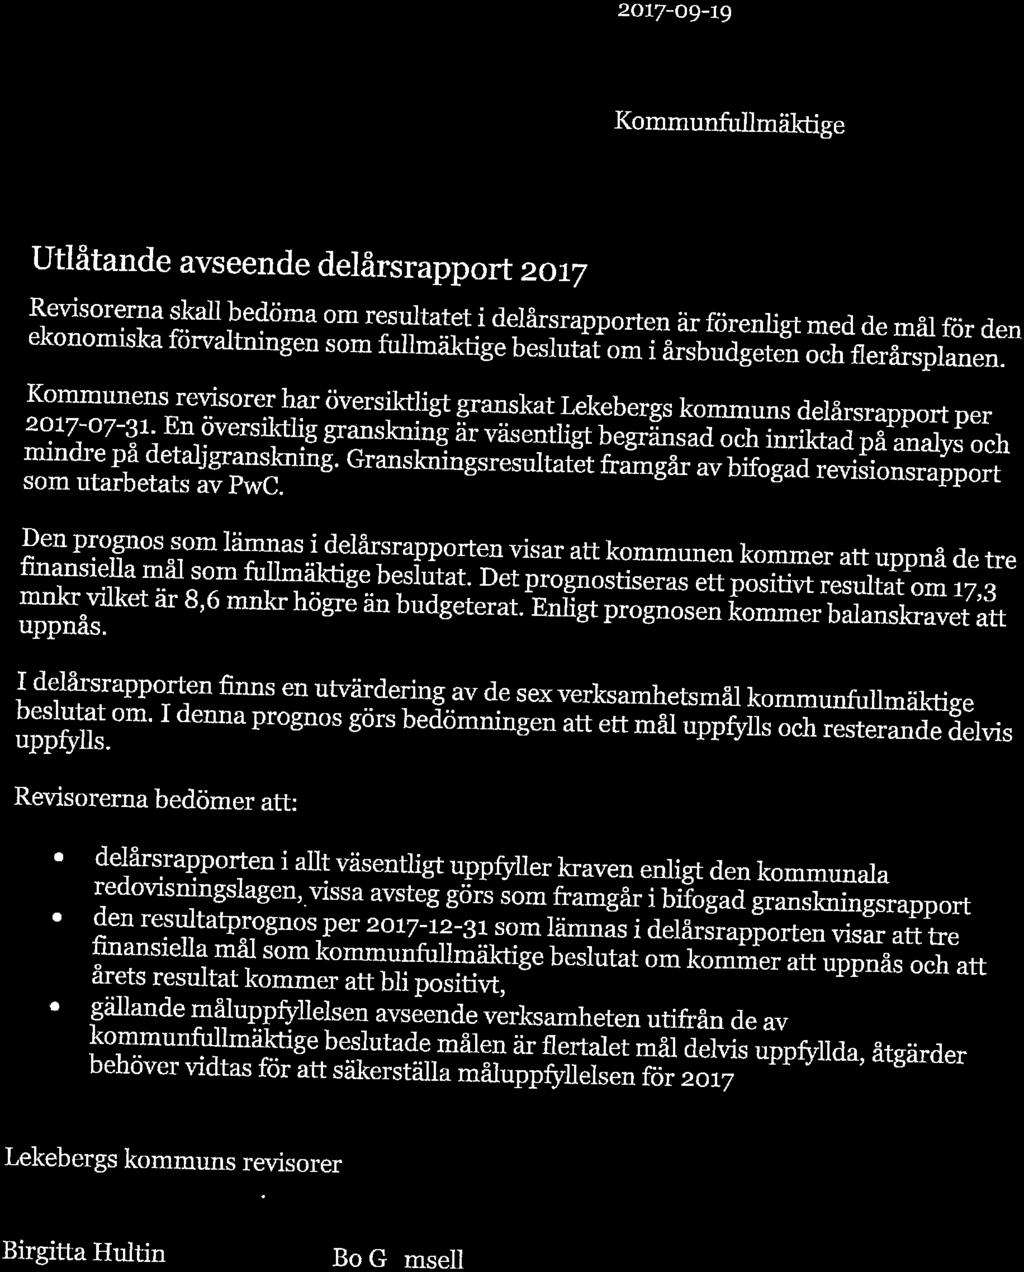 LEKEBERGS '/ KO/VIMUN" Revisorerna 2017-09-19 Kommunfullmäktige Utlåtande avseende delårsrapport 2017 RGSO^a ^ ed?